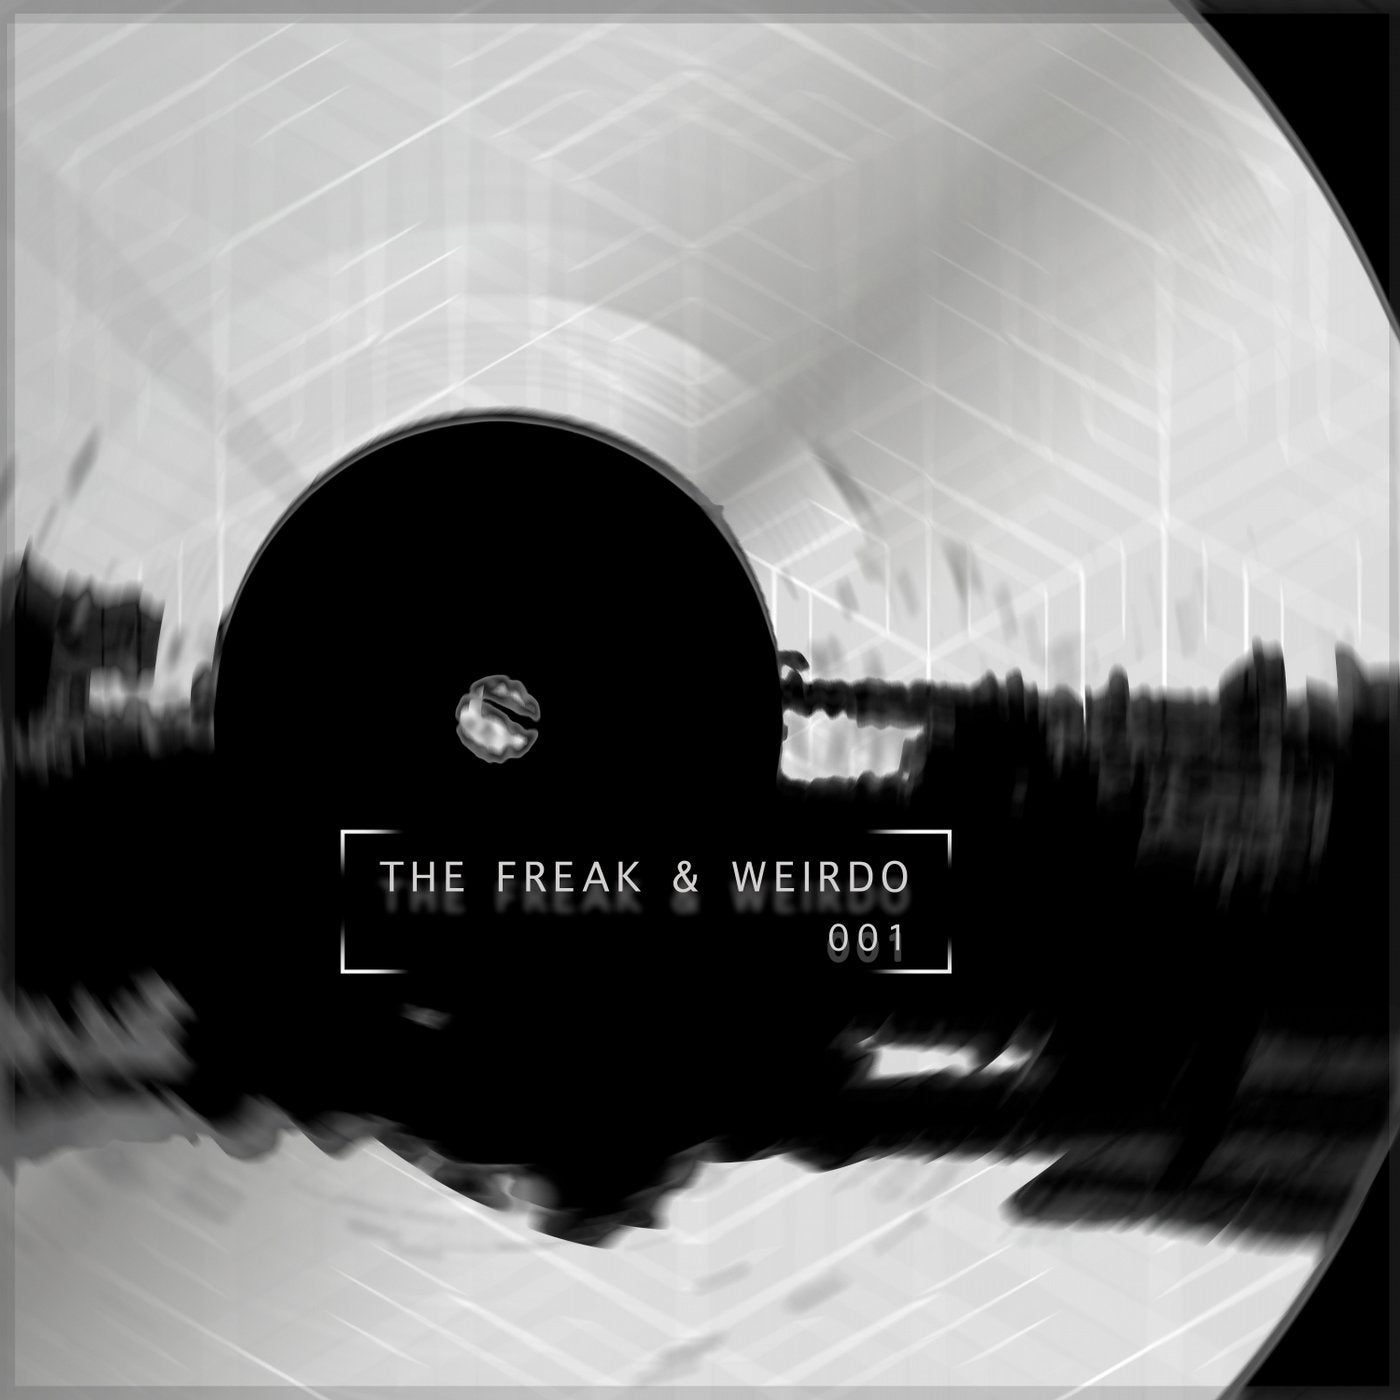 The Freak & Weirdo 001